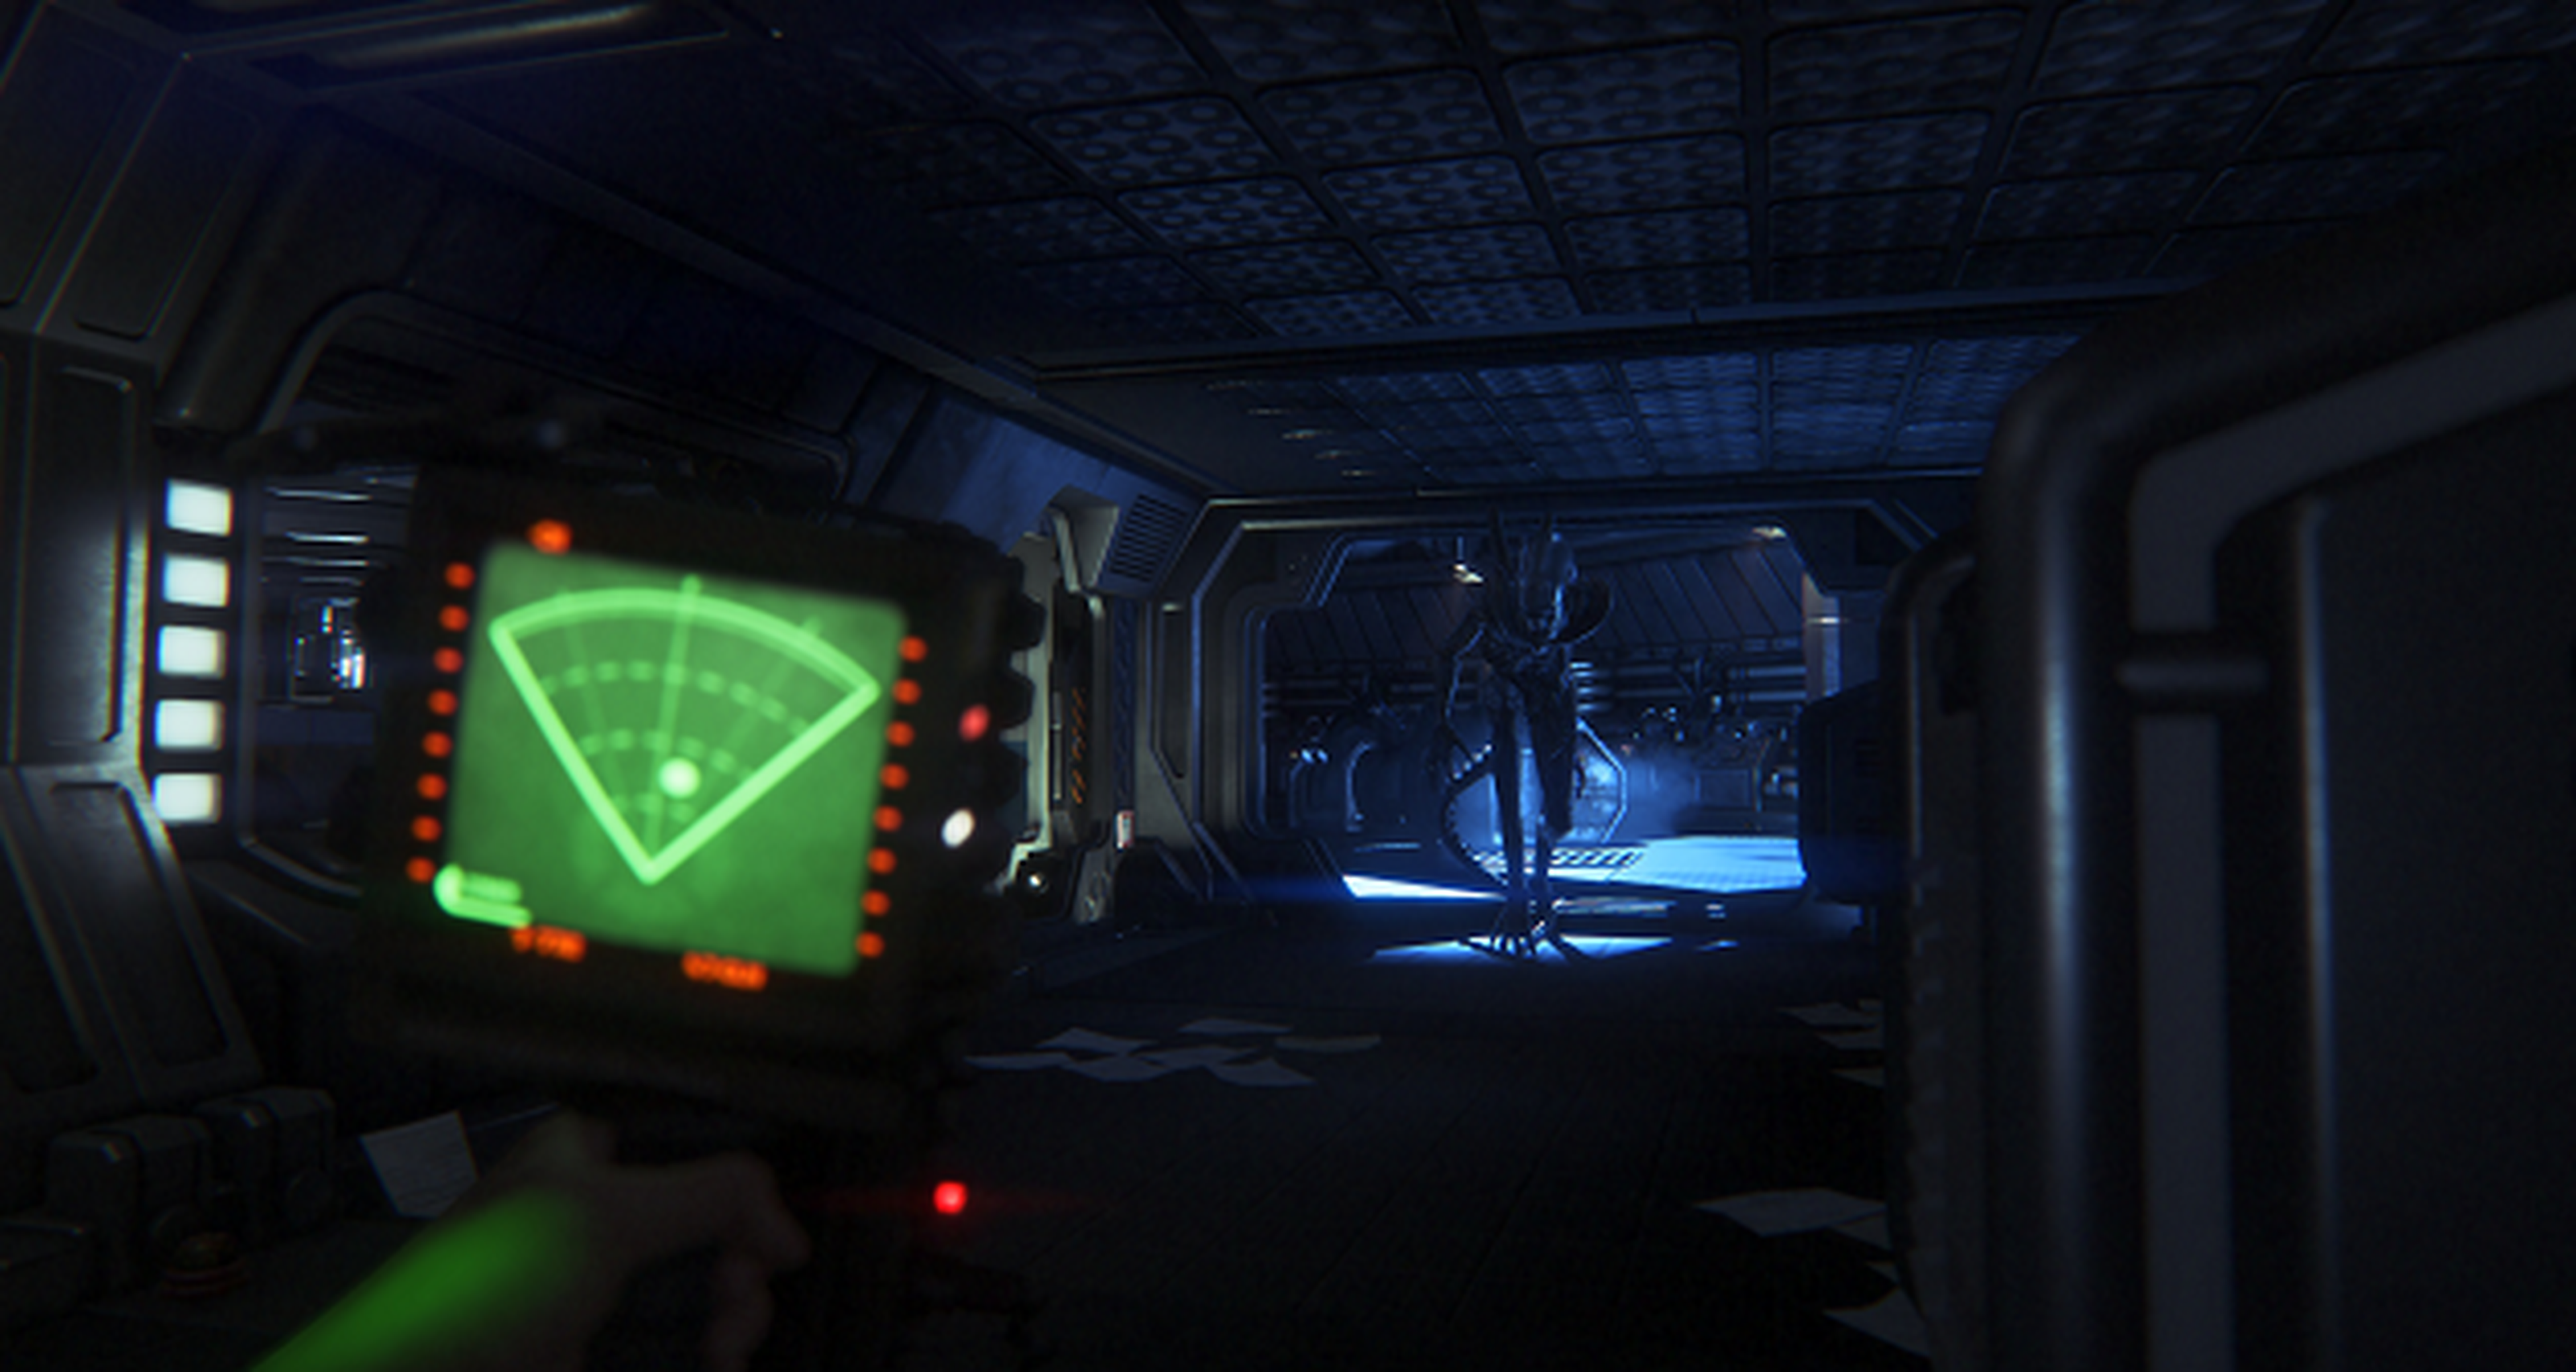 La resolución de Alien Isolation en PS4 y Xbox One